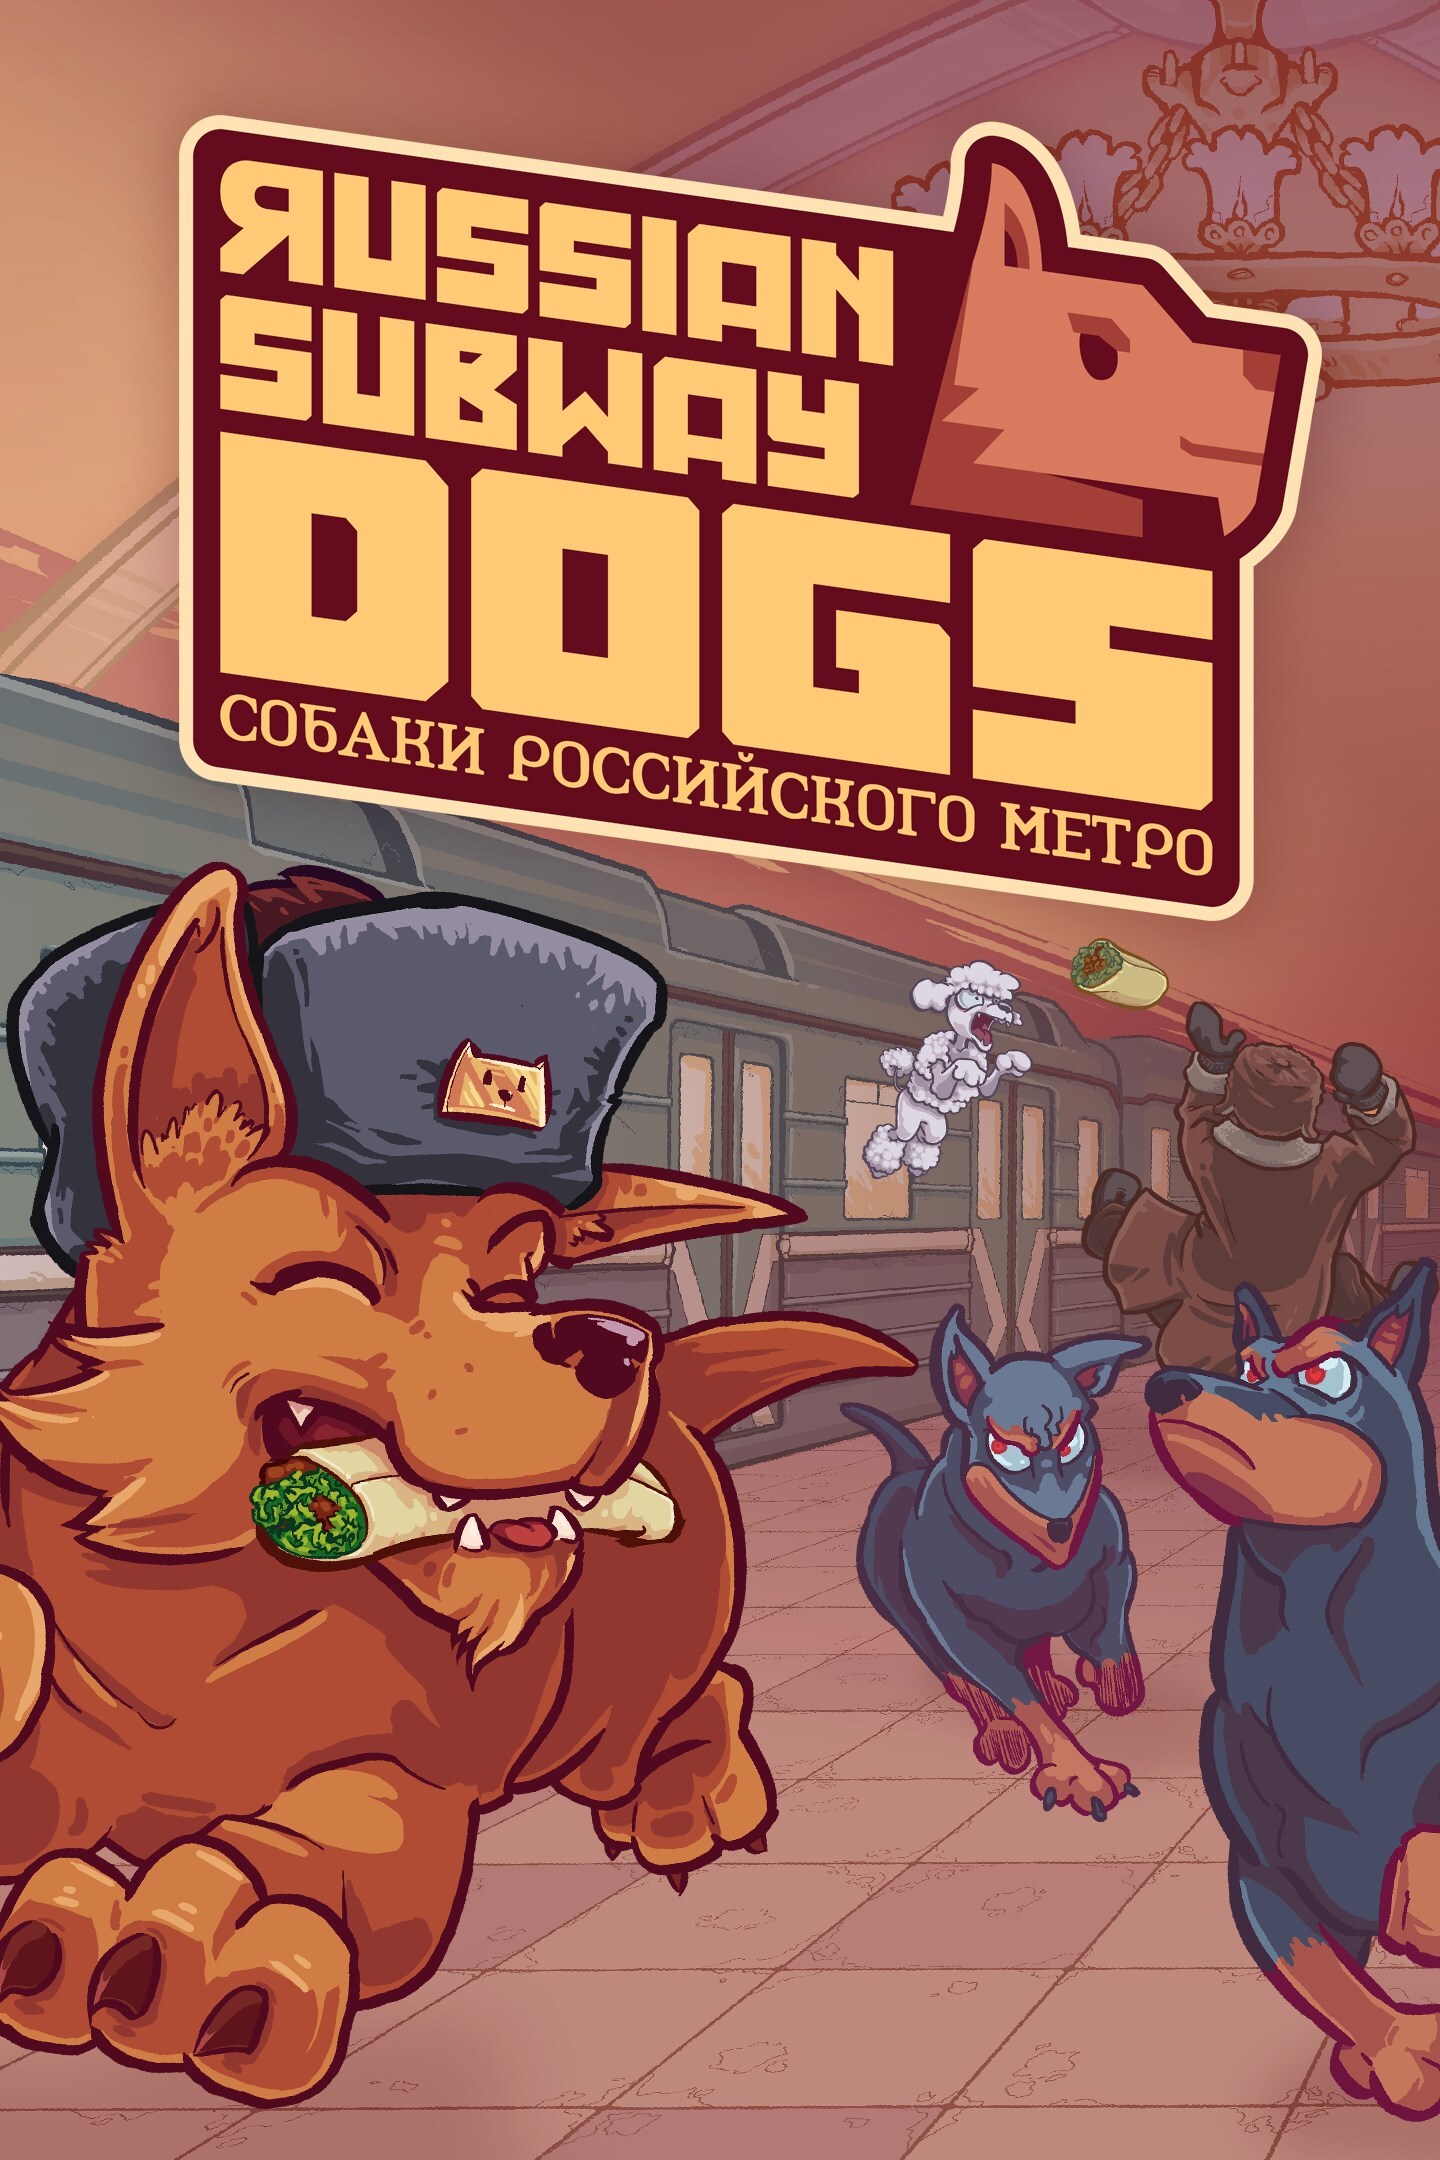 jaquette du jeu vidéo Russian Subway Dogs